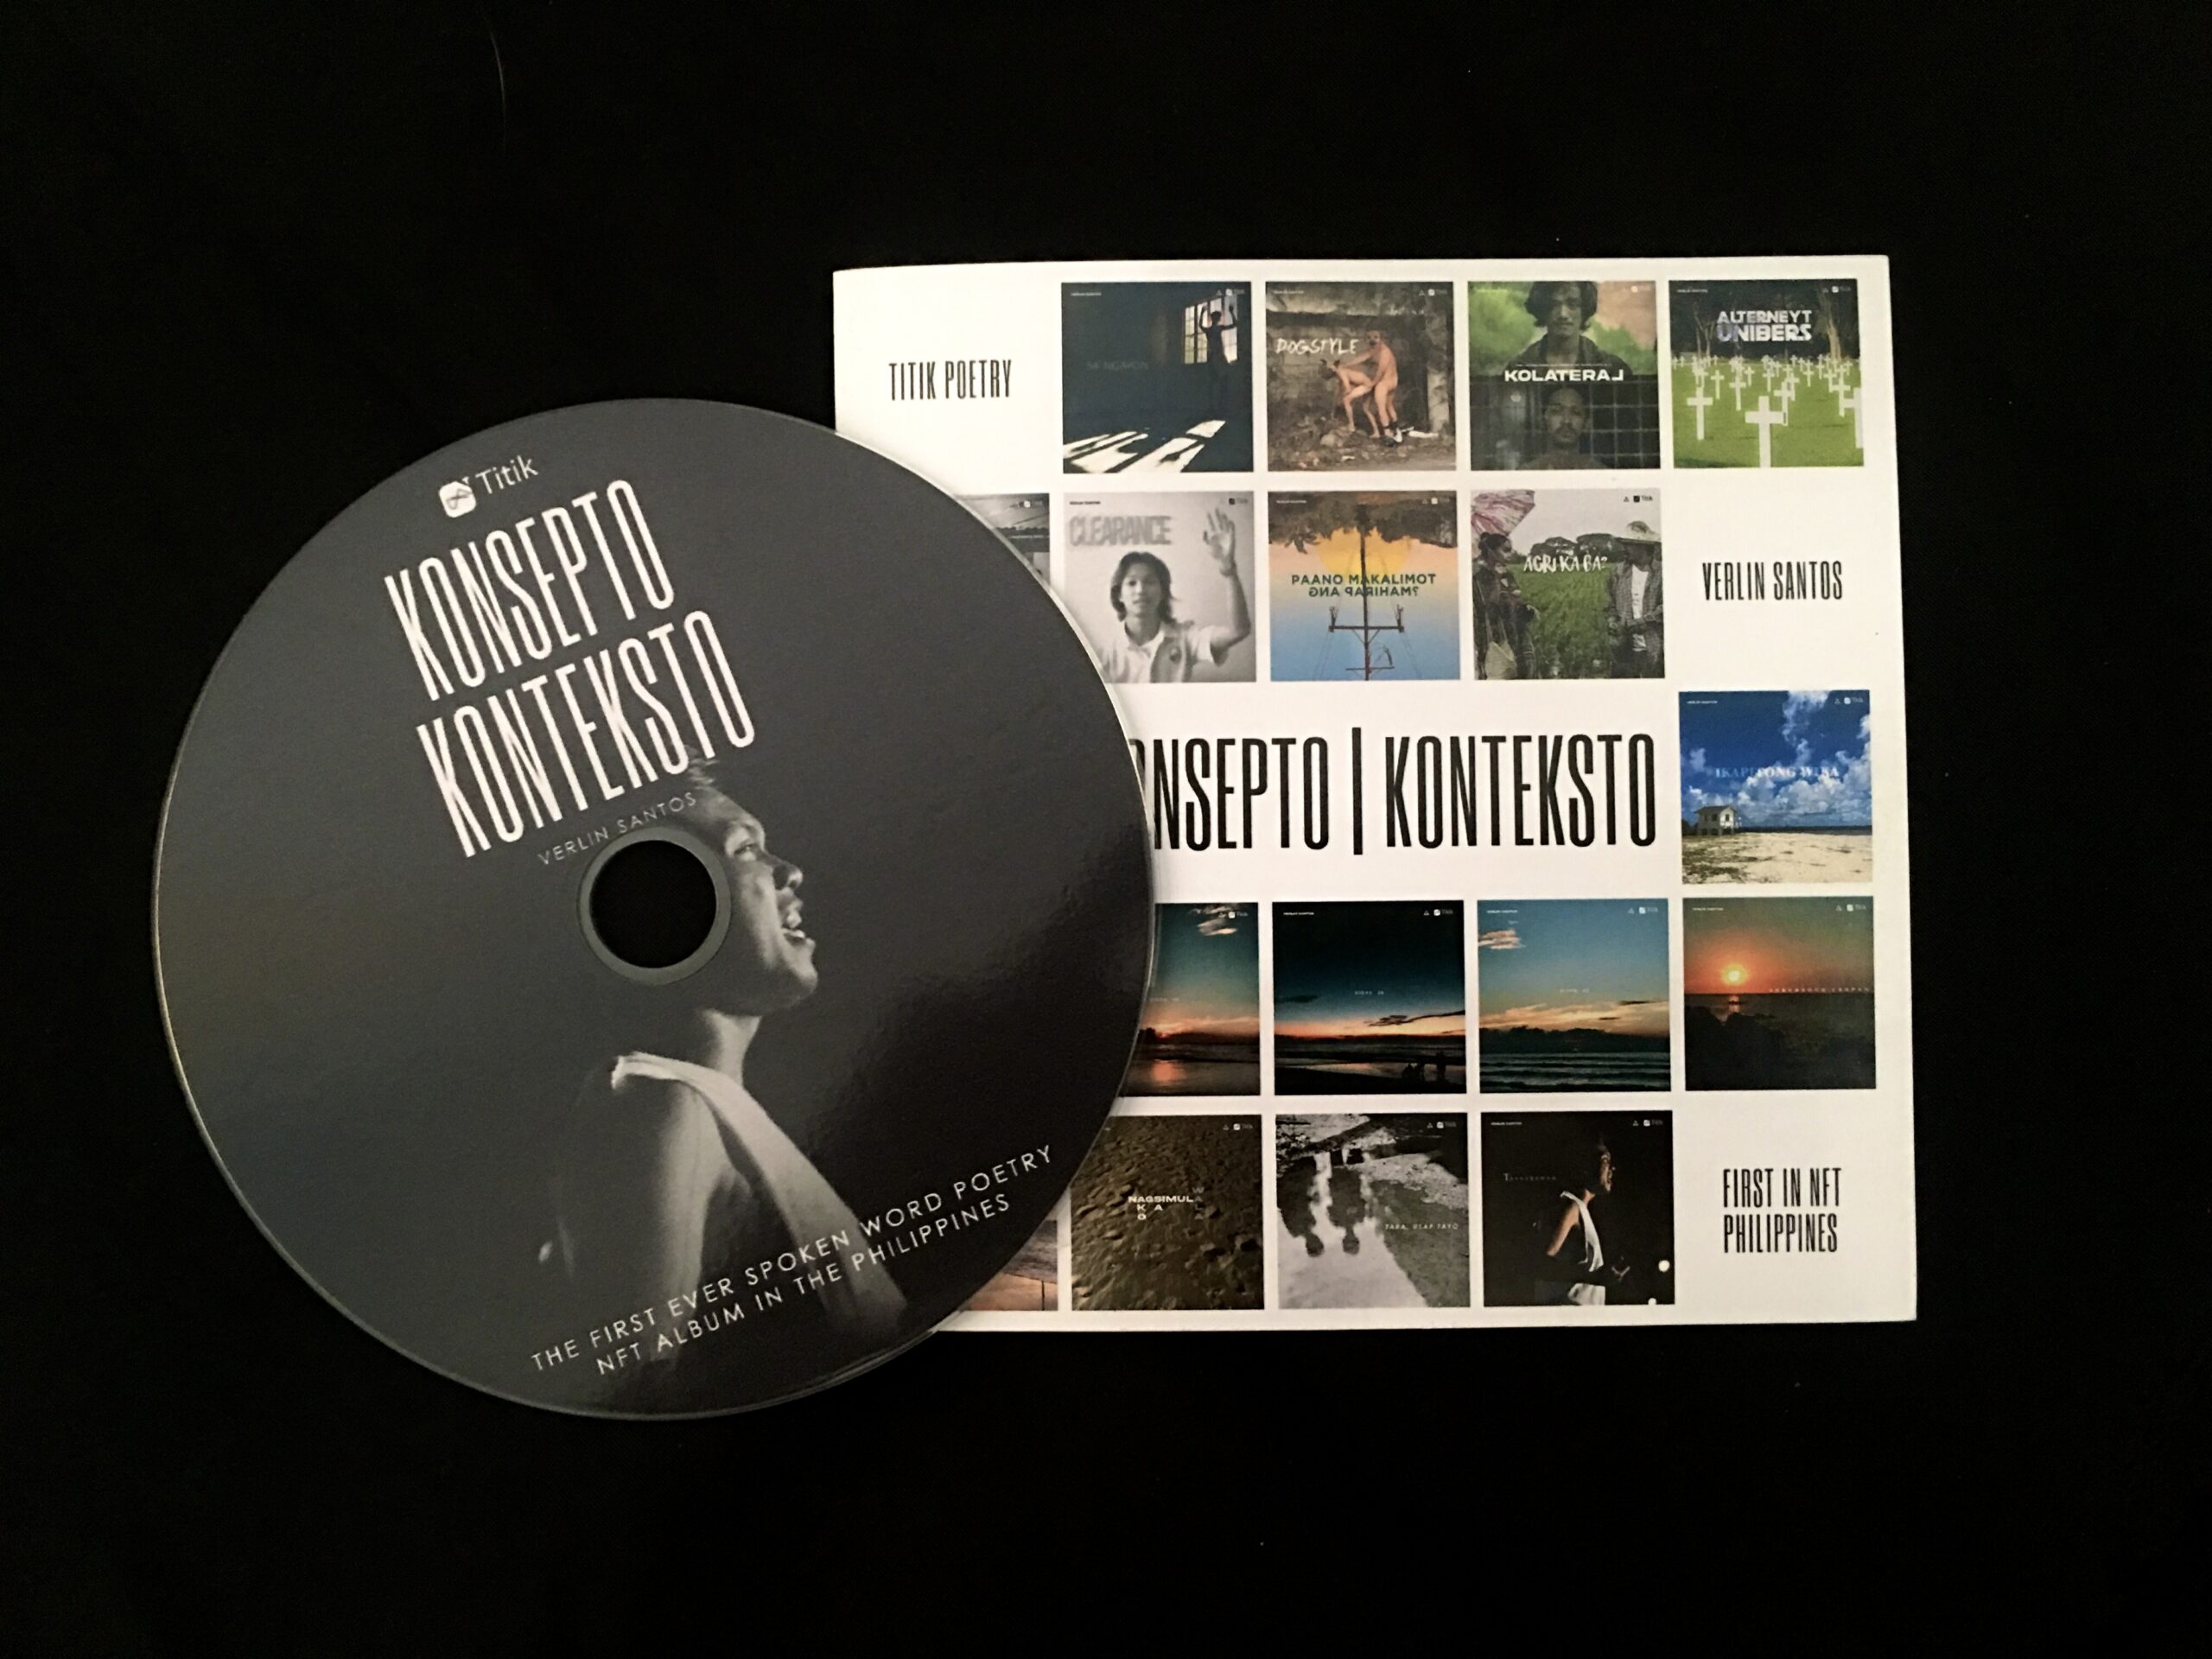 Konsepto | Konteksto, a spoken word poetry album